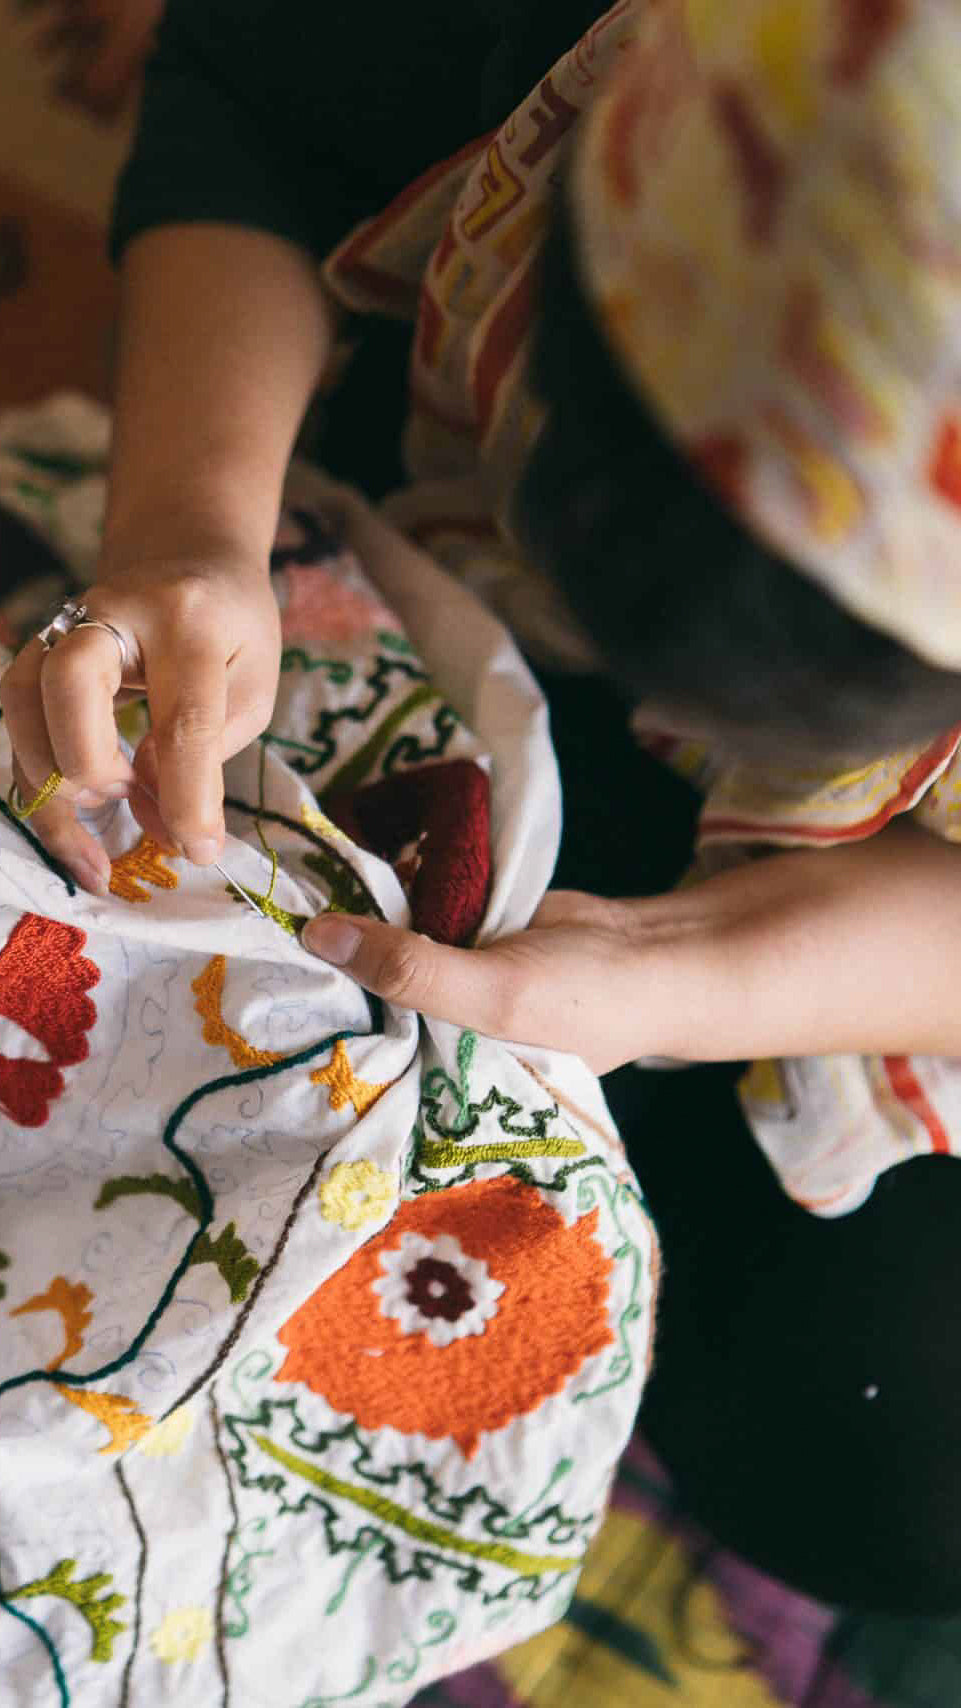 zazi-vintage-ethical-fashion-artisanal-partner-ozara-suzani-embroidery-women